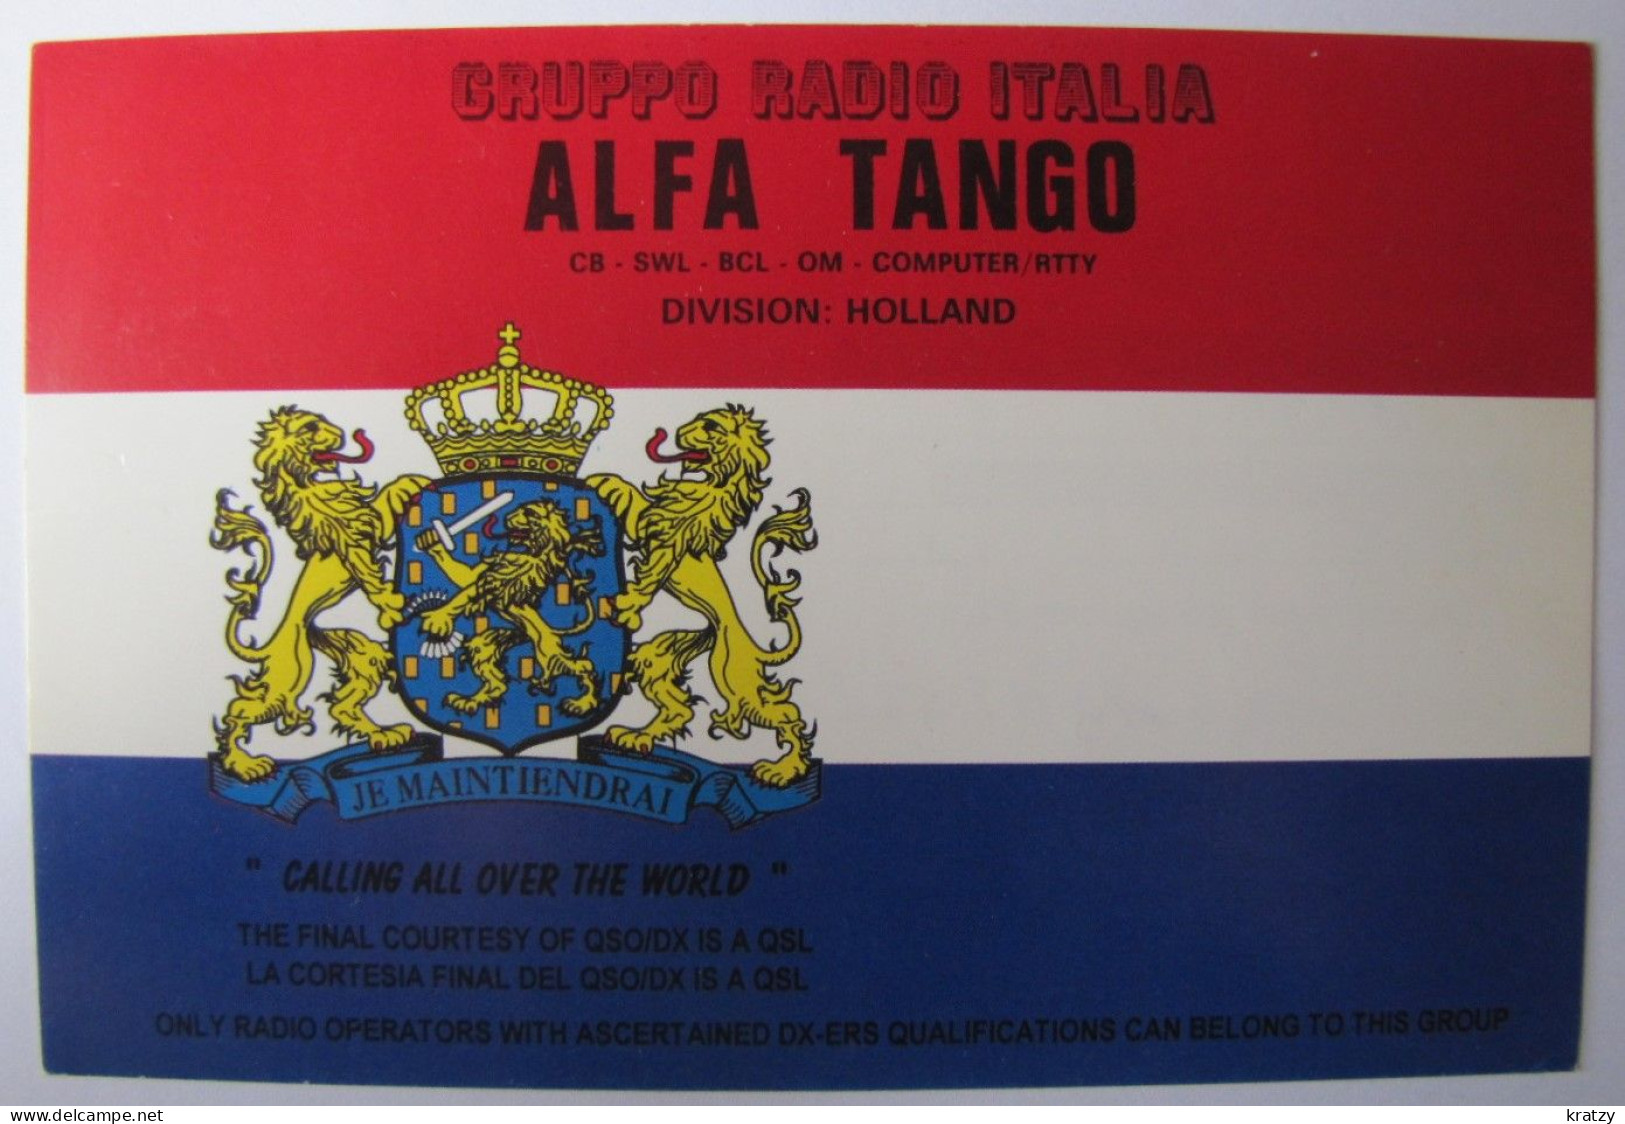 CARTES QSL - Gruppo Radio Italia Alfa Tango - Division Holland - Radio